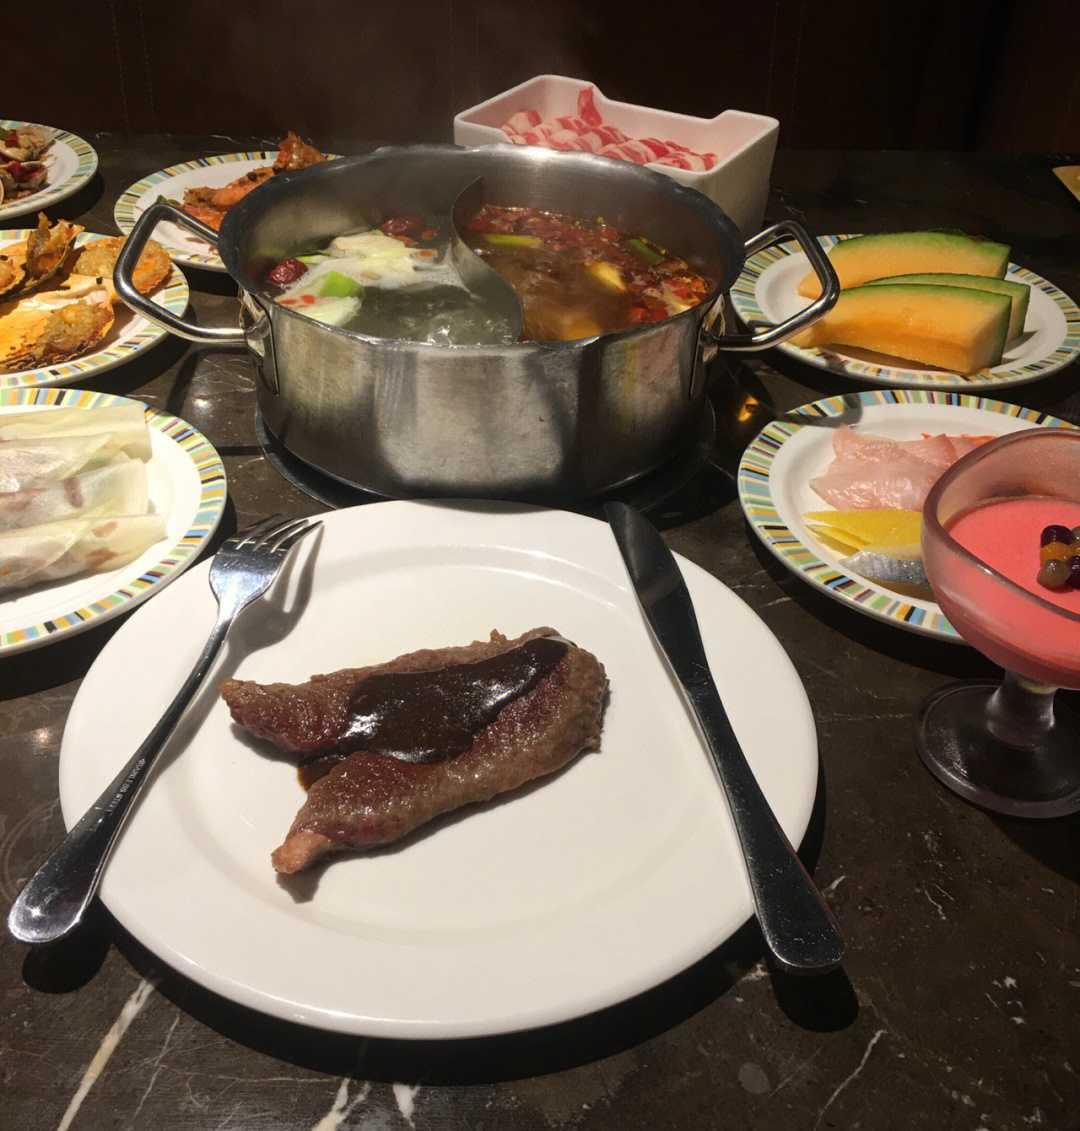 临平大酒店自助餐图片